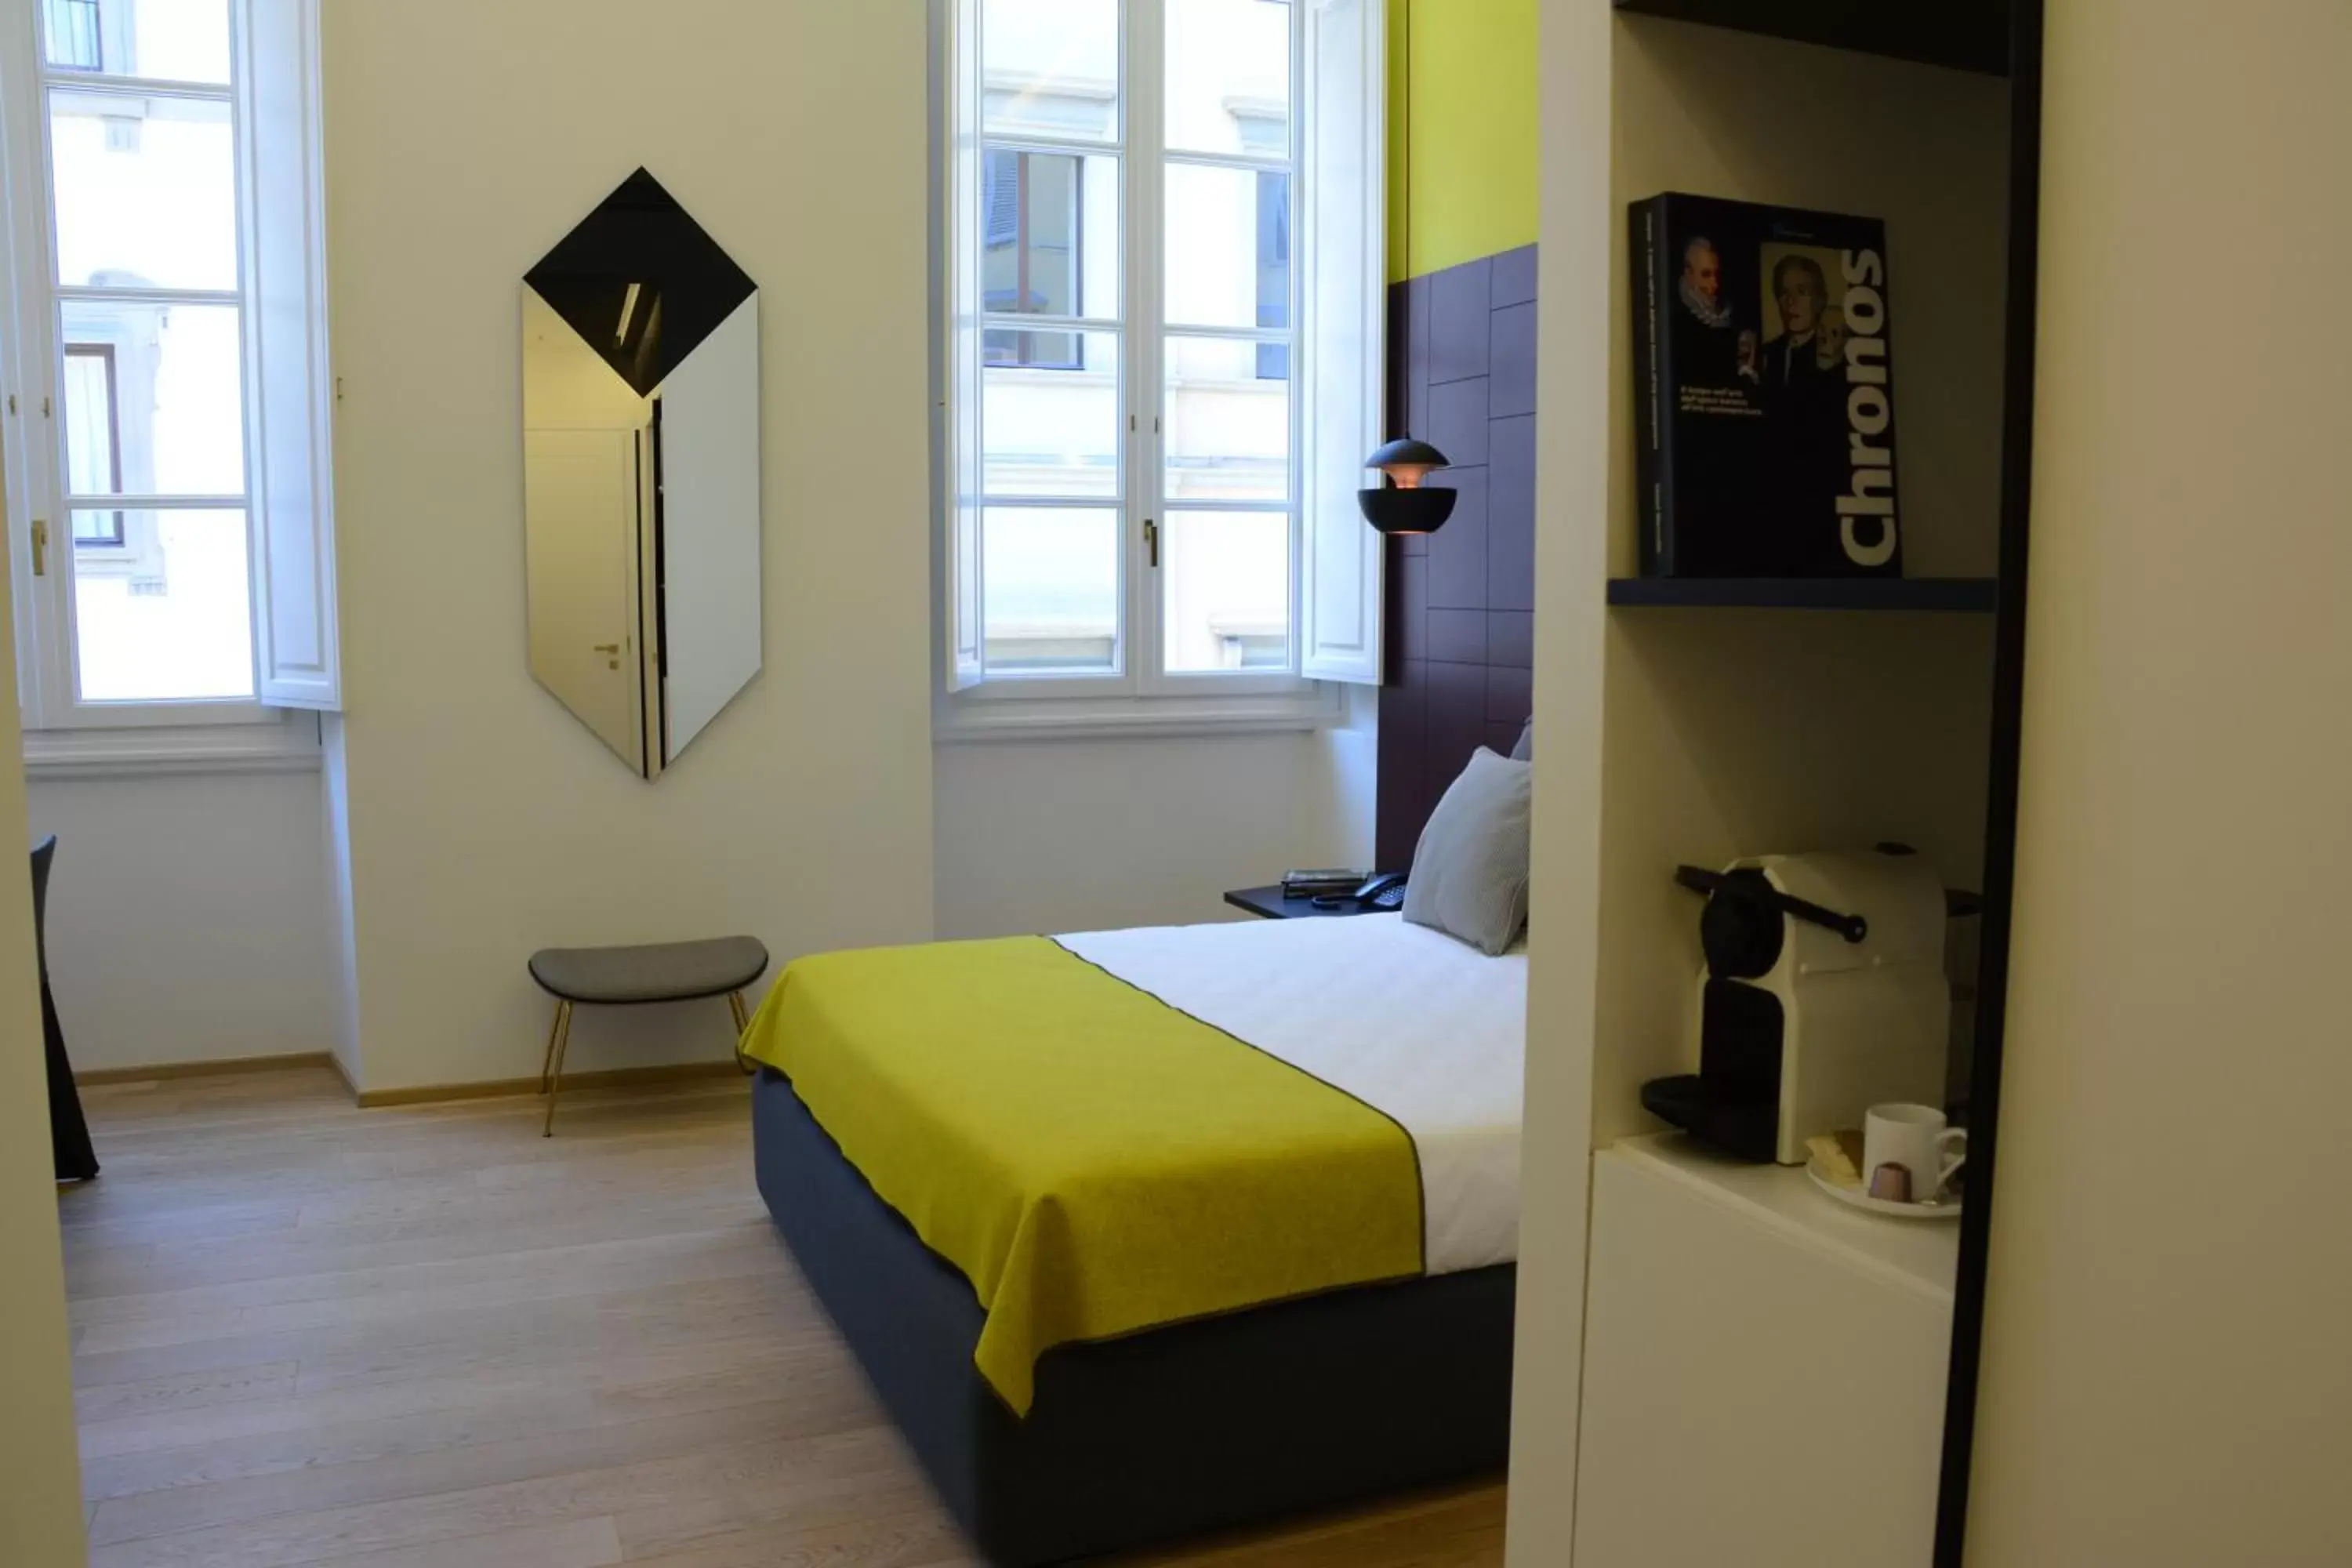 Bedroom, Room Photo in Hotel Milù